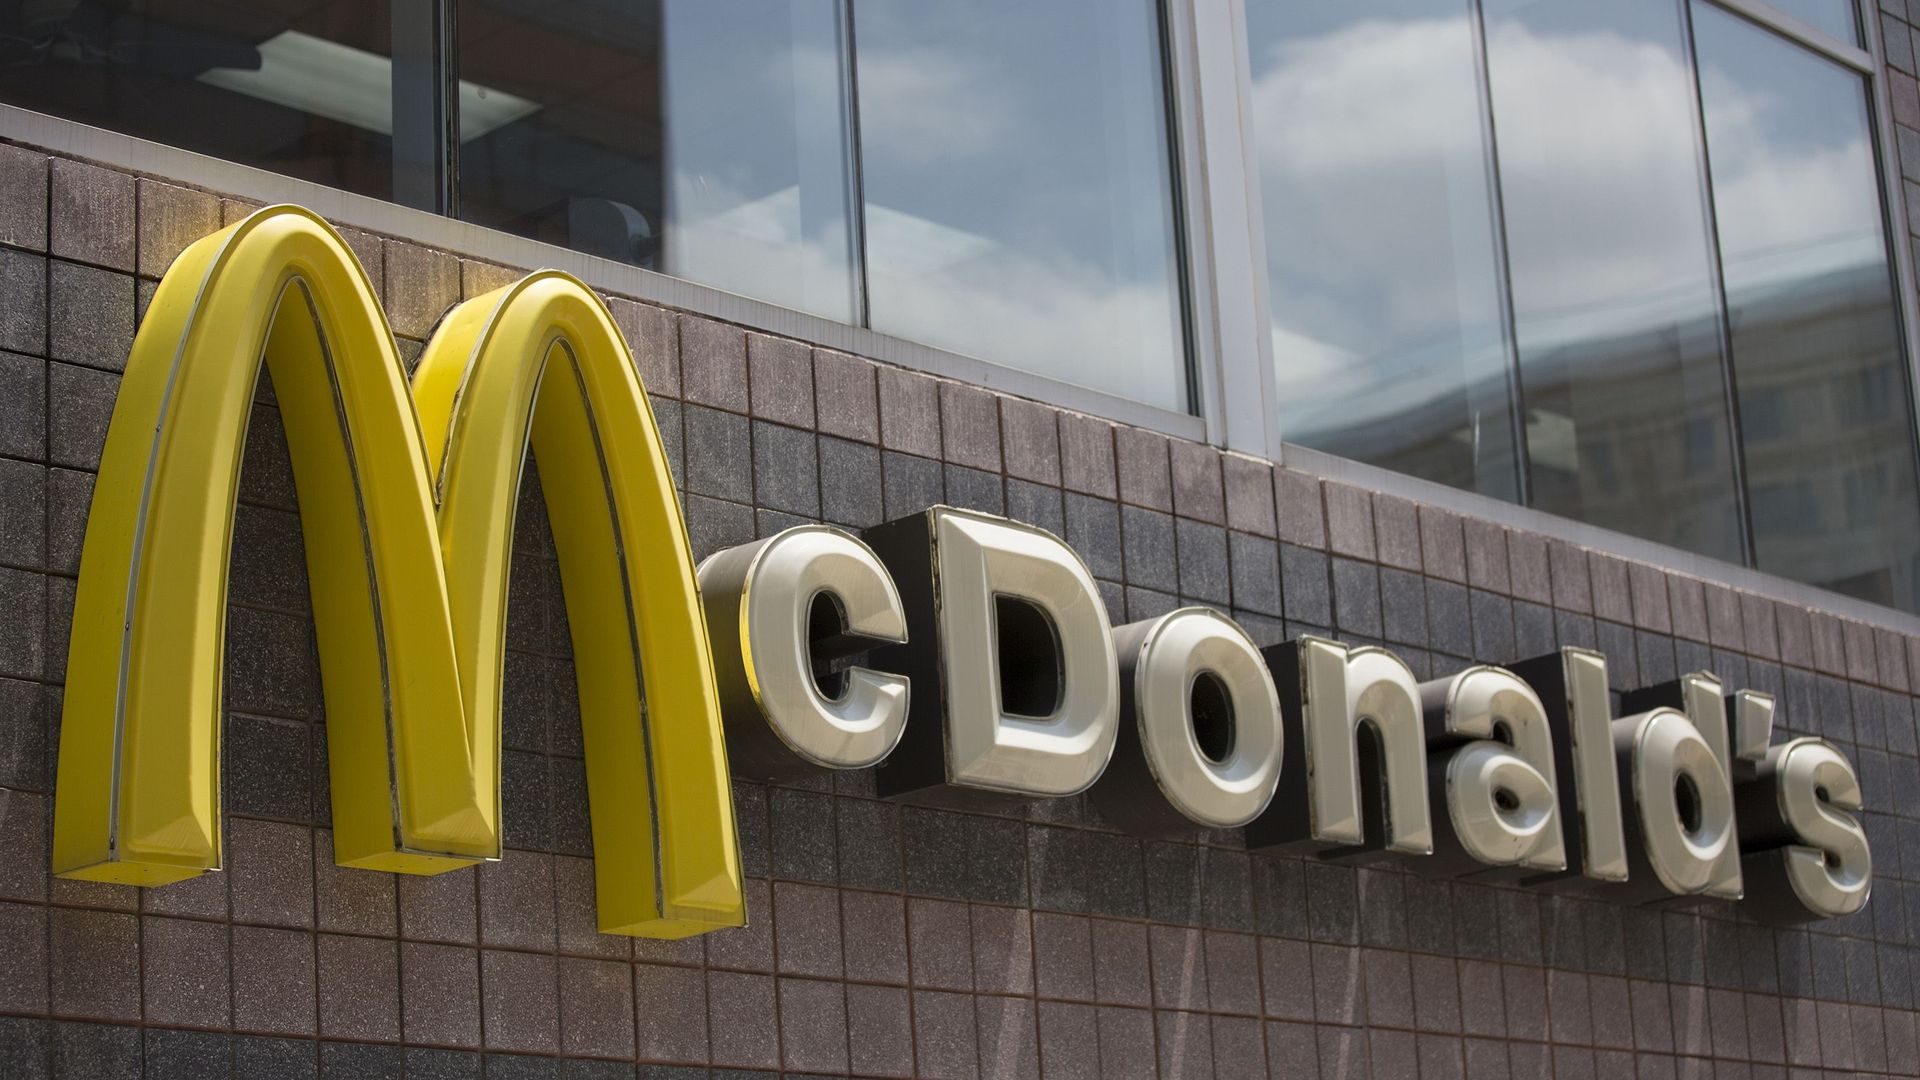 Le géant américain de la restauration rapide McDonald's entend réduire  l'usage du plastique sur son marché européen, où la législation est de plus en plus restrictive.